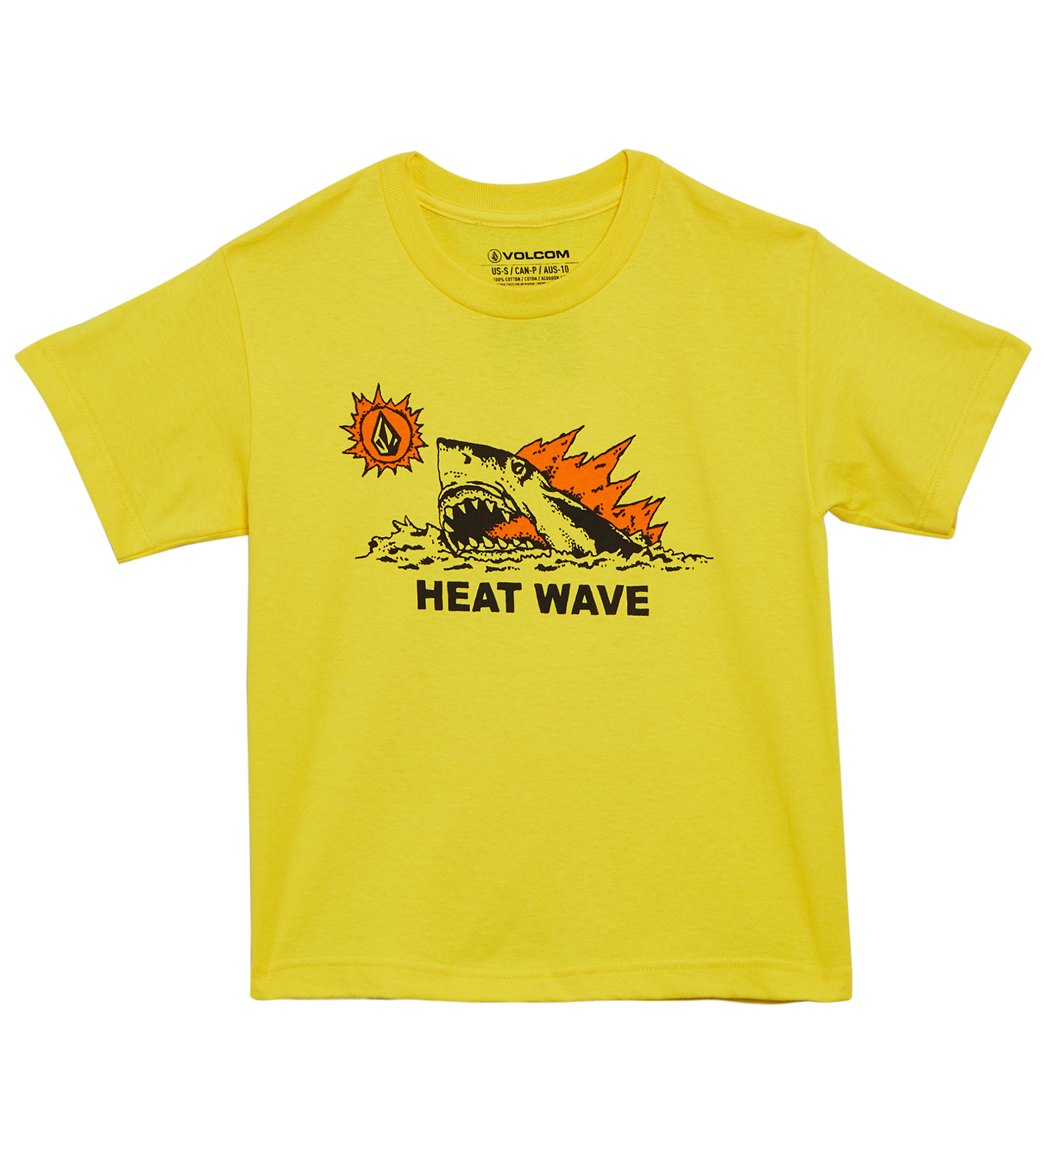 Volcom Boys' Hot Shark Tee Shirt Toddler - True Yellow 4T Cotton - Swimoutlet.com